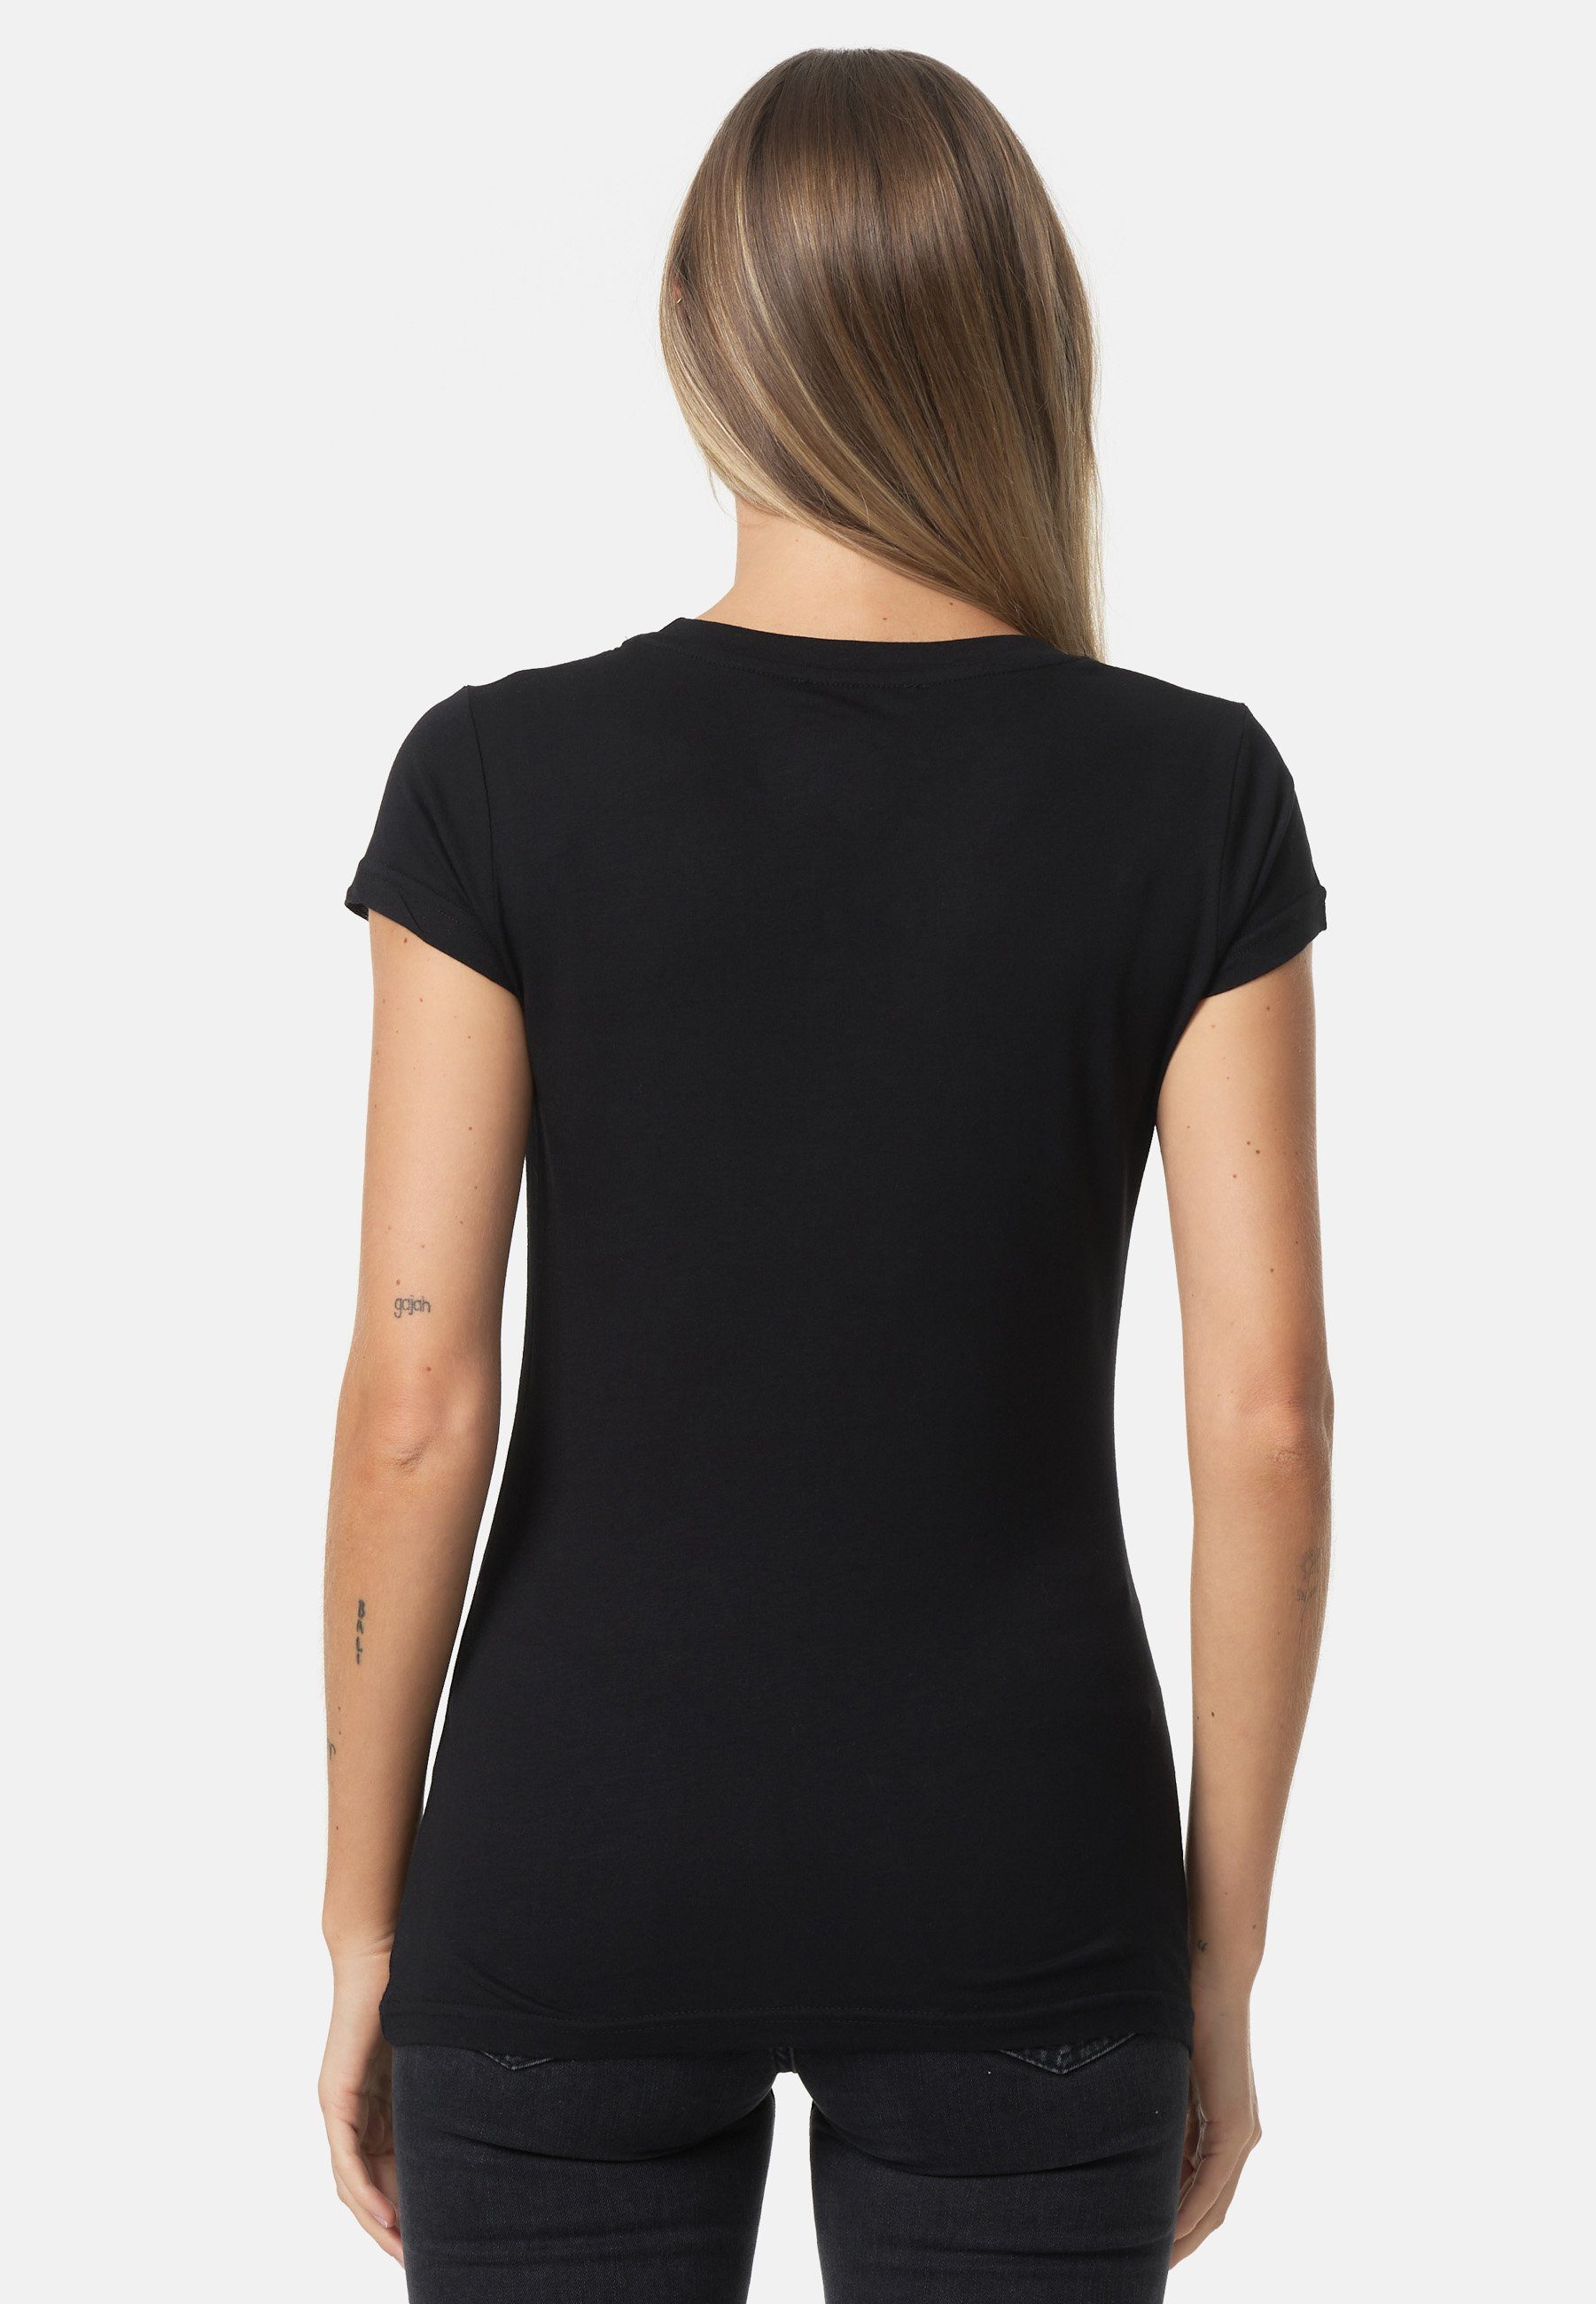 Decay mit T-Shirt Frontprint schwarz glänzendem